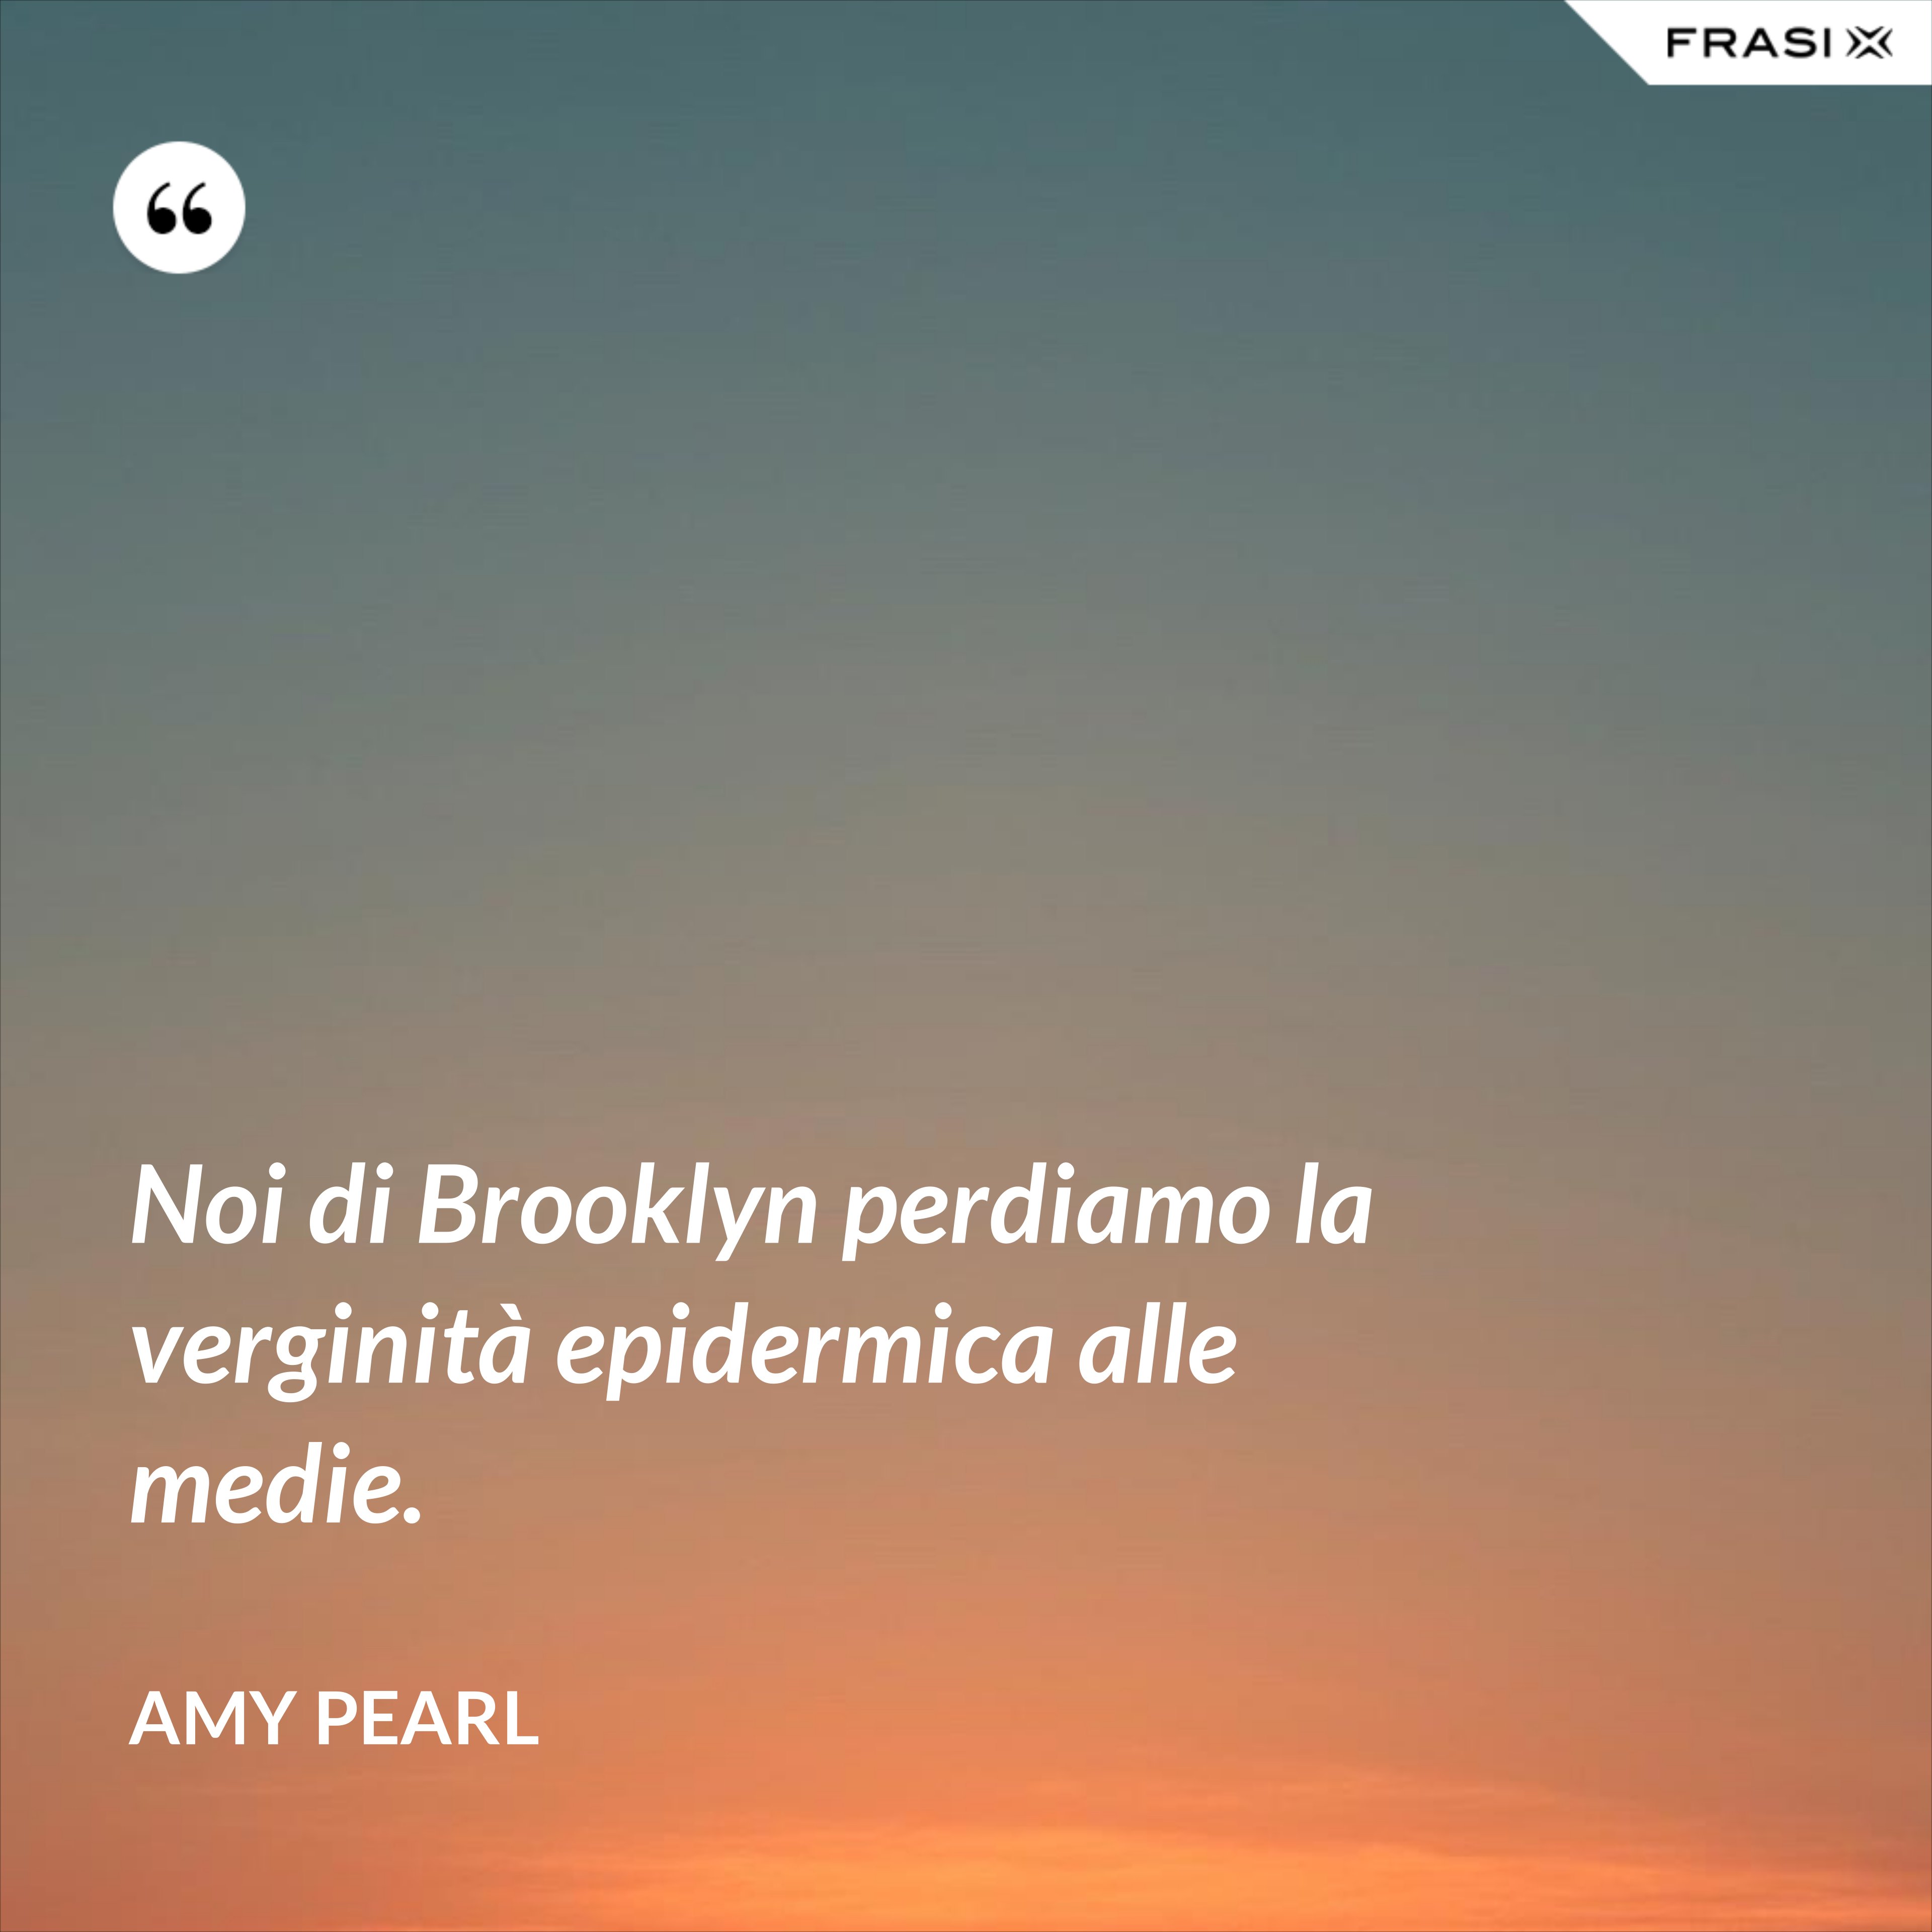 Noi di Brooklyn perdiamo la verginità epidermica alle medie. - Amy Pearl